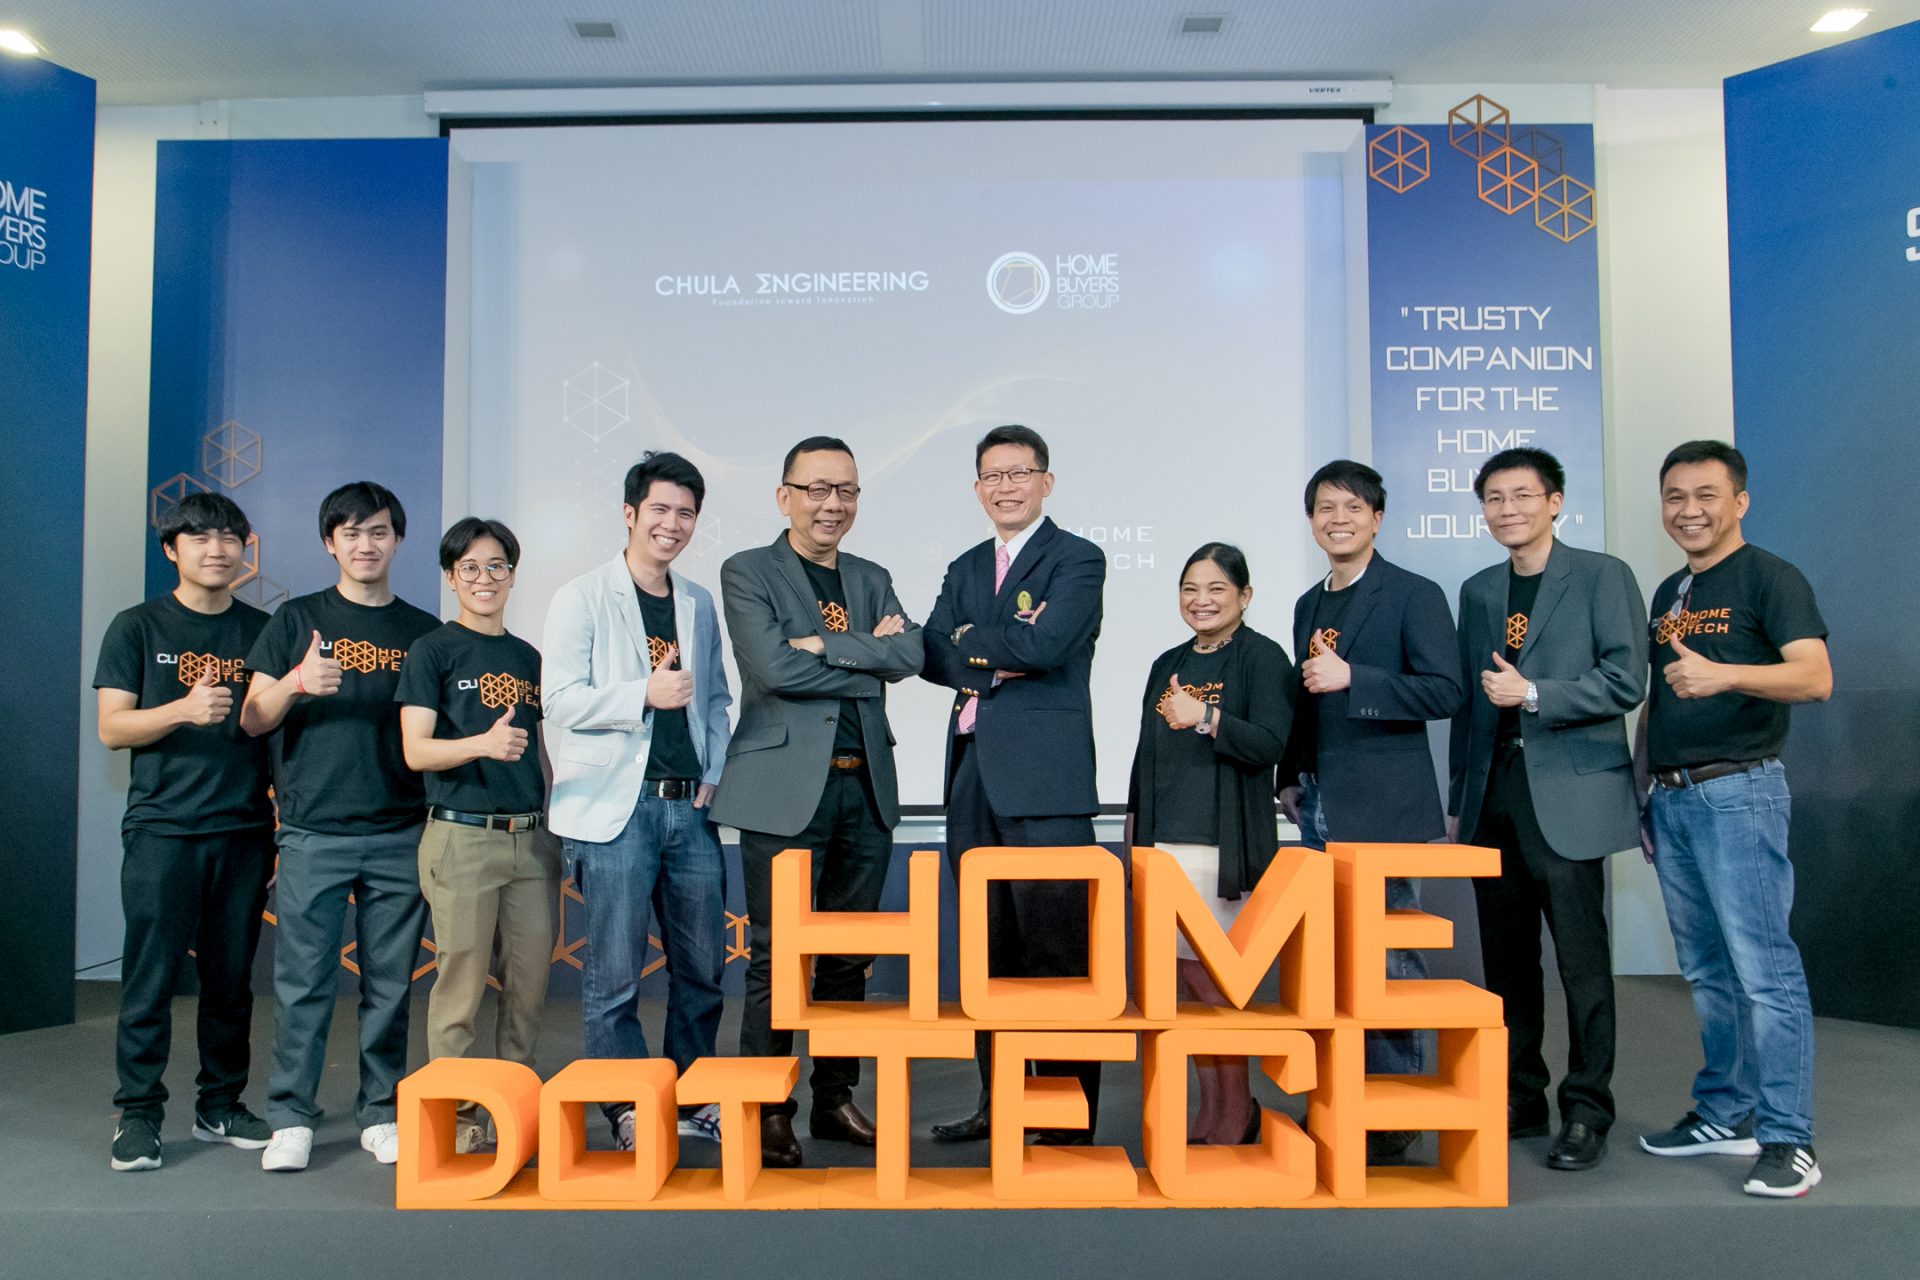 โฮมบายเออร์กรุ๊ป จับมือ วิศวะจุฬาฯ เปิดตัว “Chula-Home Dot Tech” ปั้น Prop Tech ตอบโจทย์อสังหาฯ ครบวงจรครั้งแรกของไทย